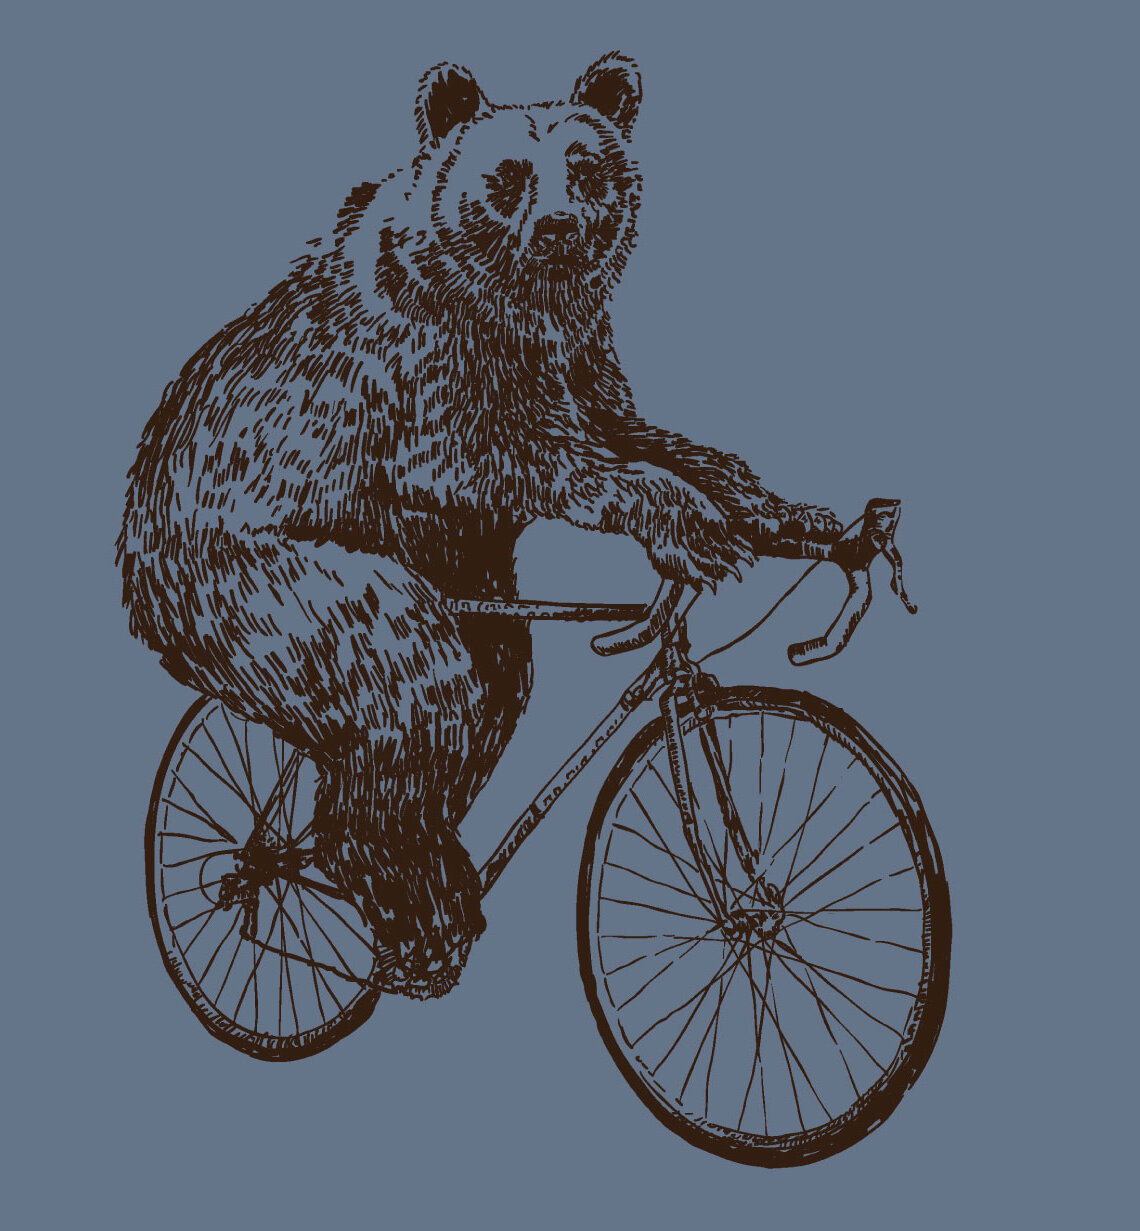 A-biking-bear.jpg